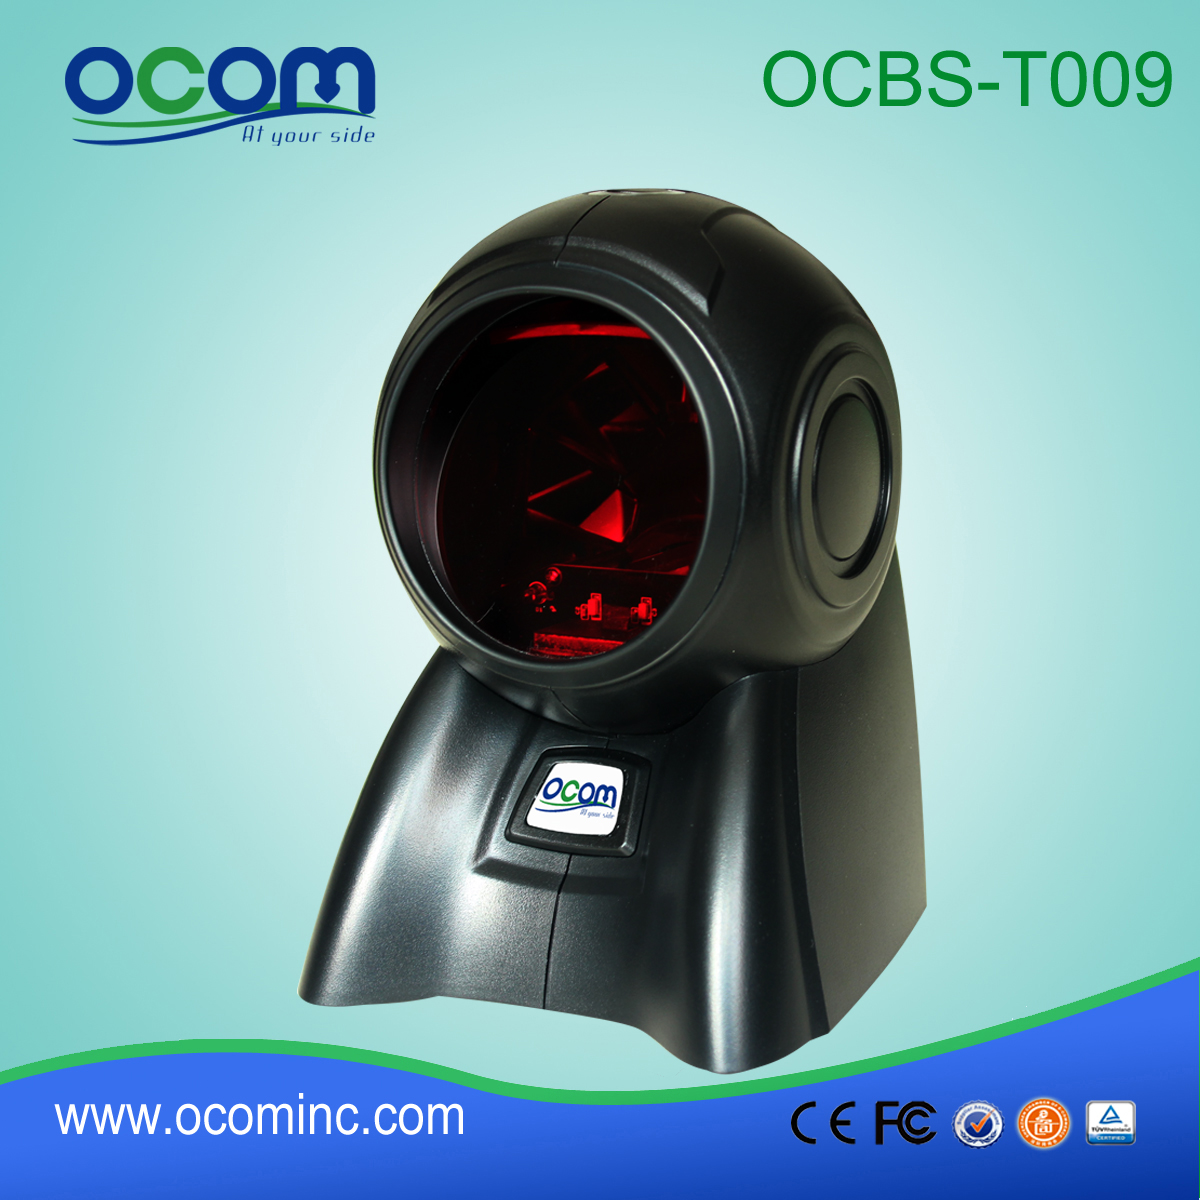 OCBS-T009 Pulpit wielokierunkowy laserowy skaner kodów kreskowych w najlepszej cenie